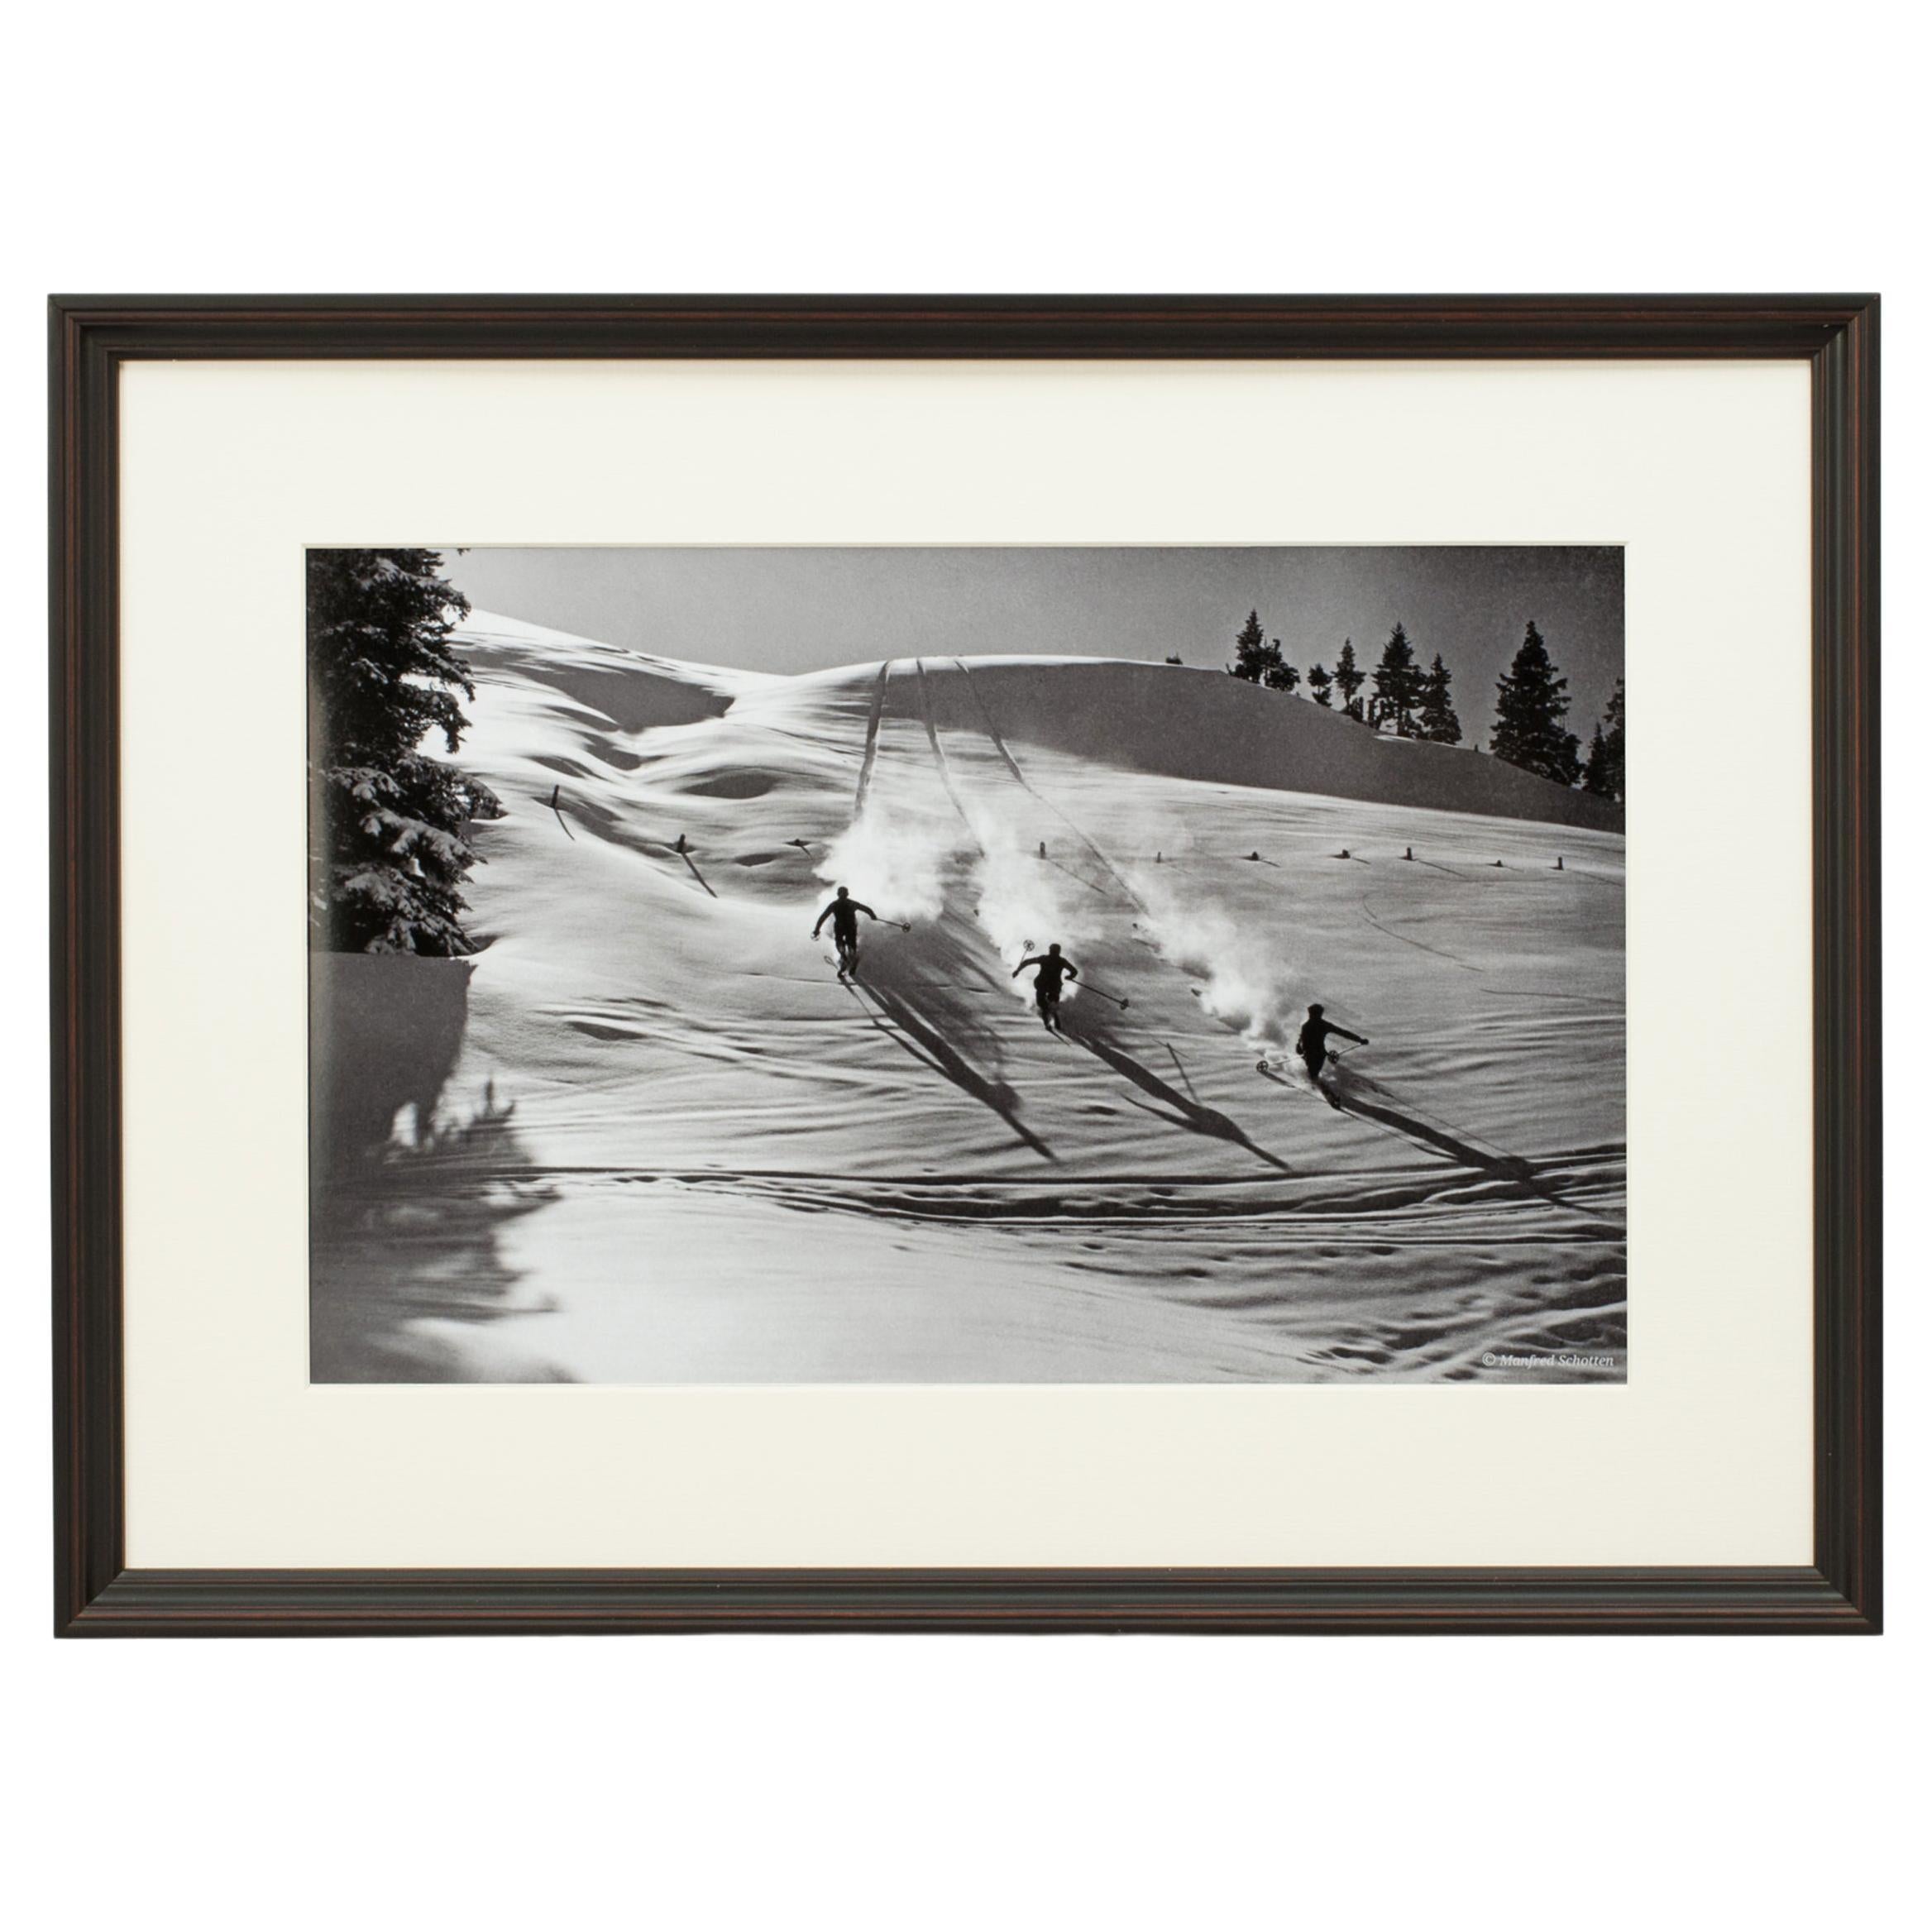 Skifotografie im Vintage-Stil:: gerahmte Alpin-Skifotografie:: Descent in Powder